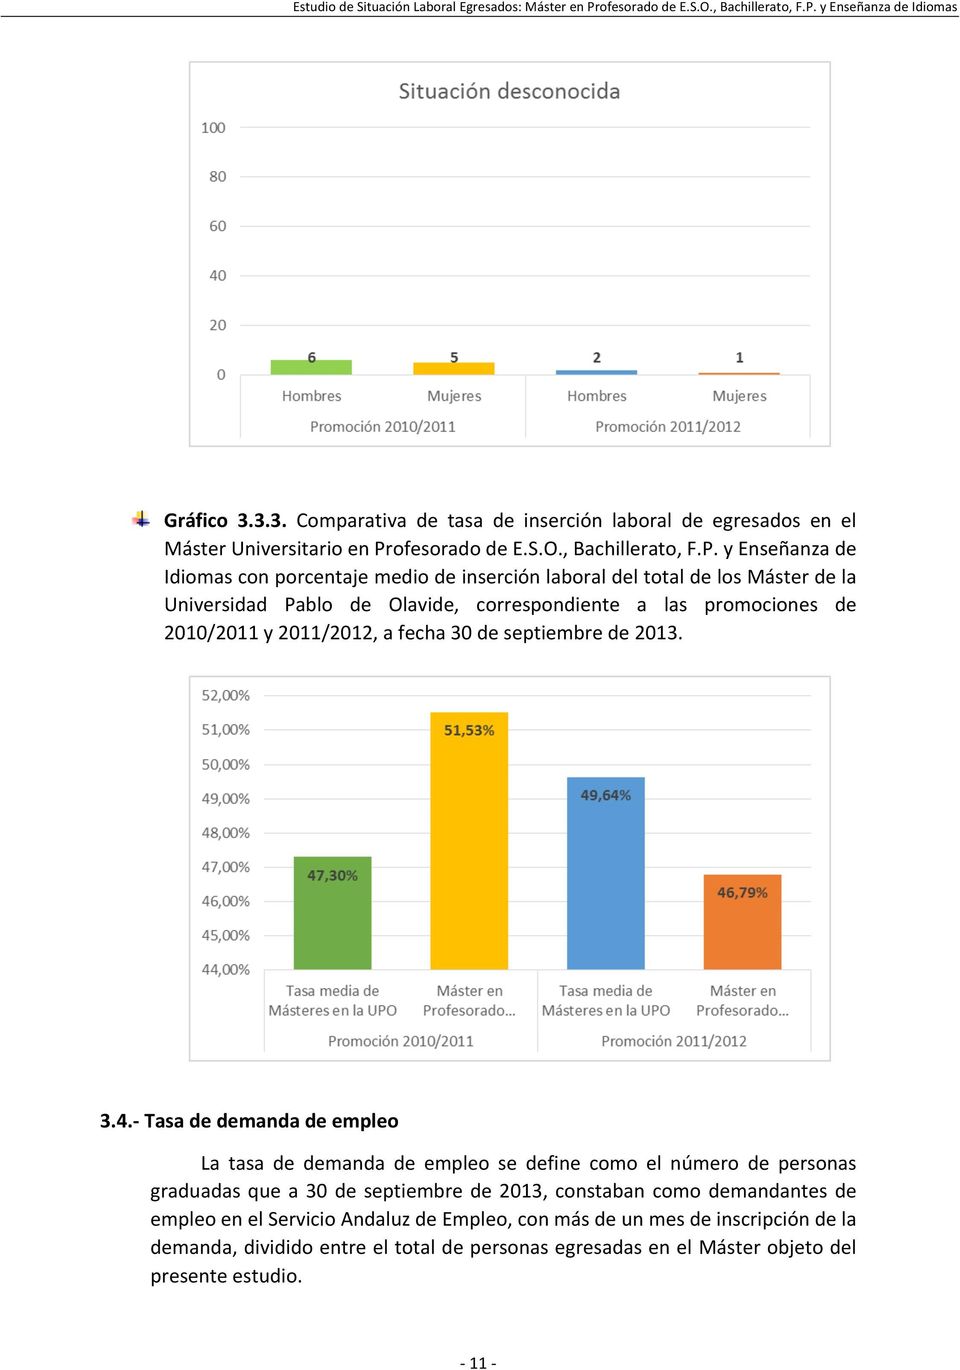 y Enseñanza de Idiomas con porcentaje medio de inserción laboral del total de los Máster de la Universidad Pablo de Olavide, correspondiente a las promociones de 2010/2011 y